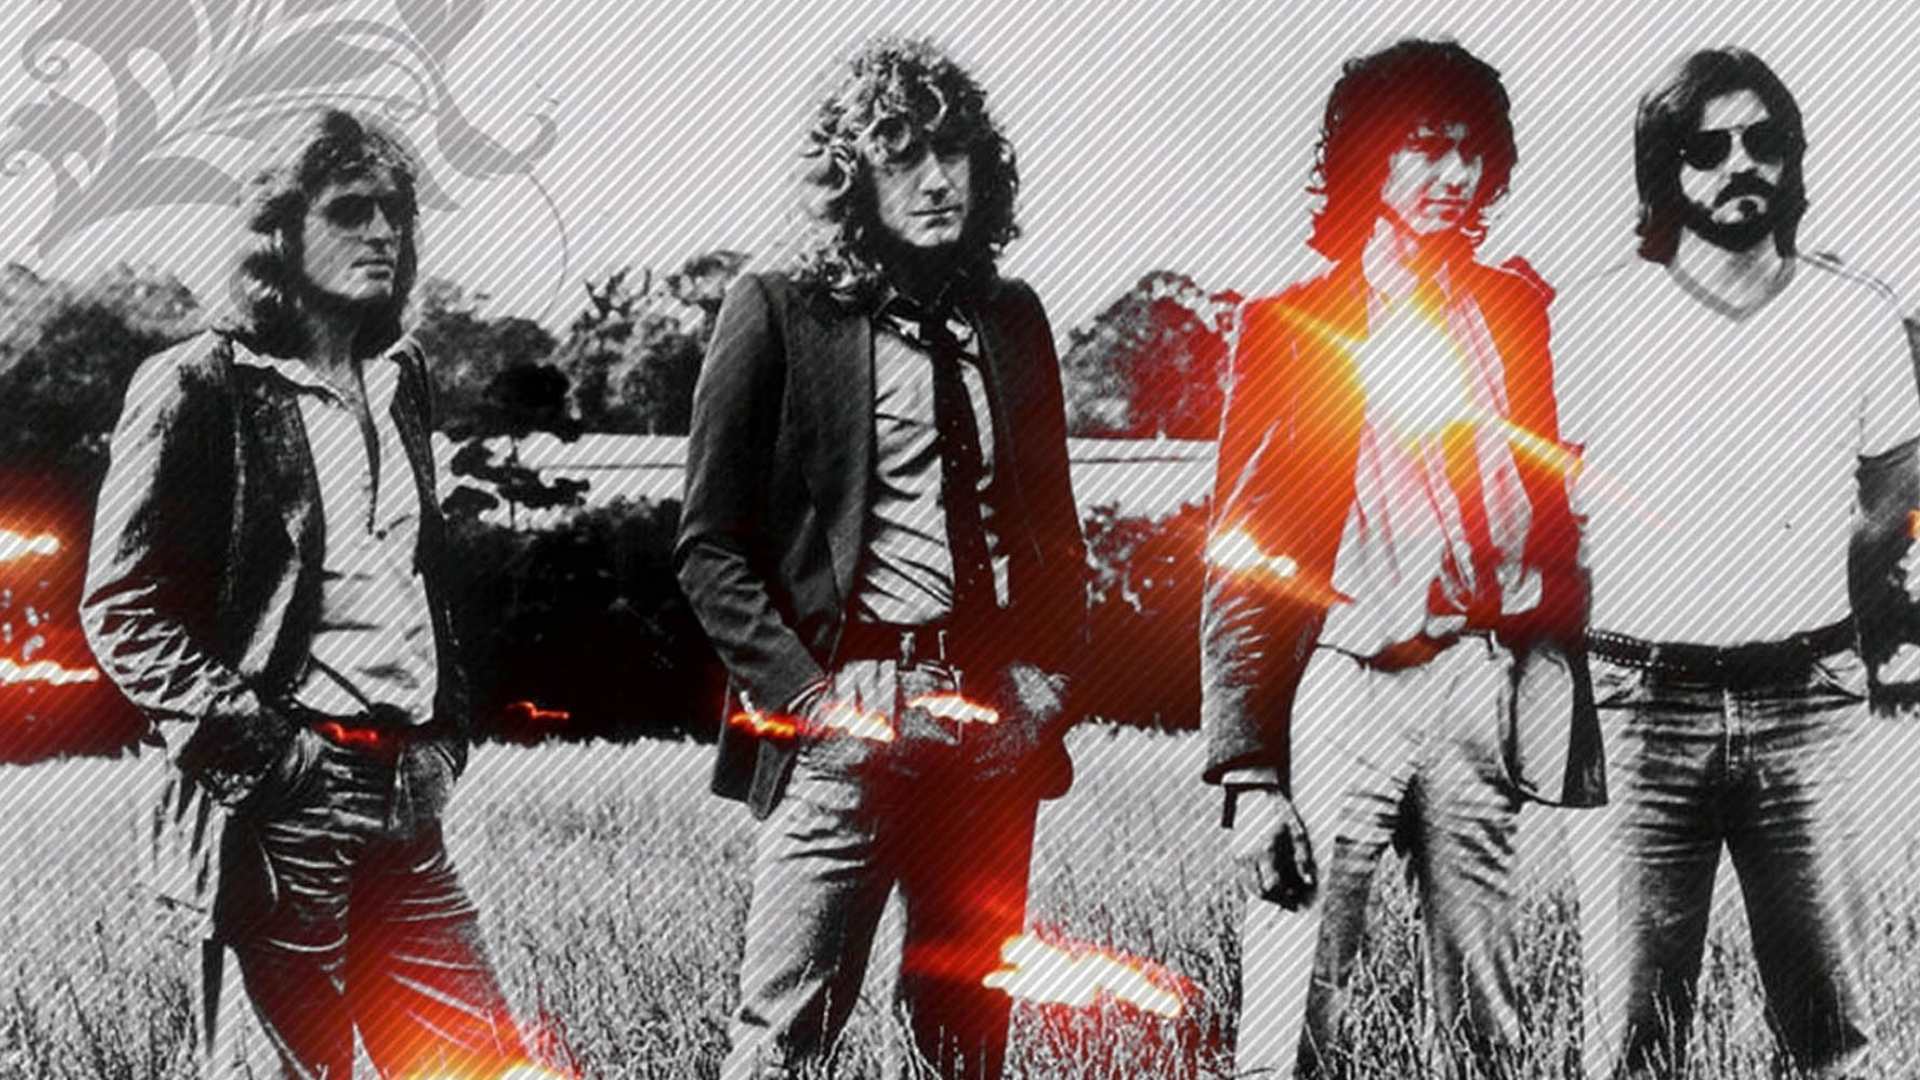 Led Zeppelin Computer Wallpapers, Desktop Backgrounds | 1920x1080 ...